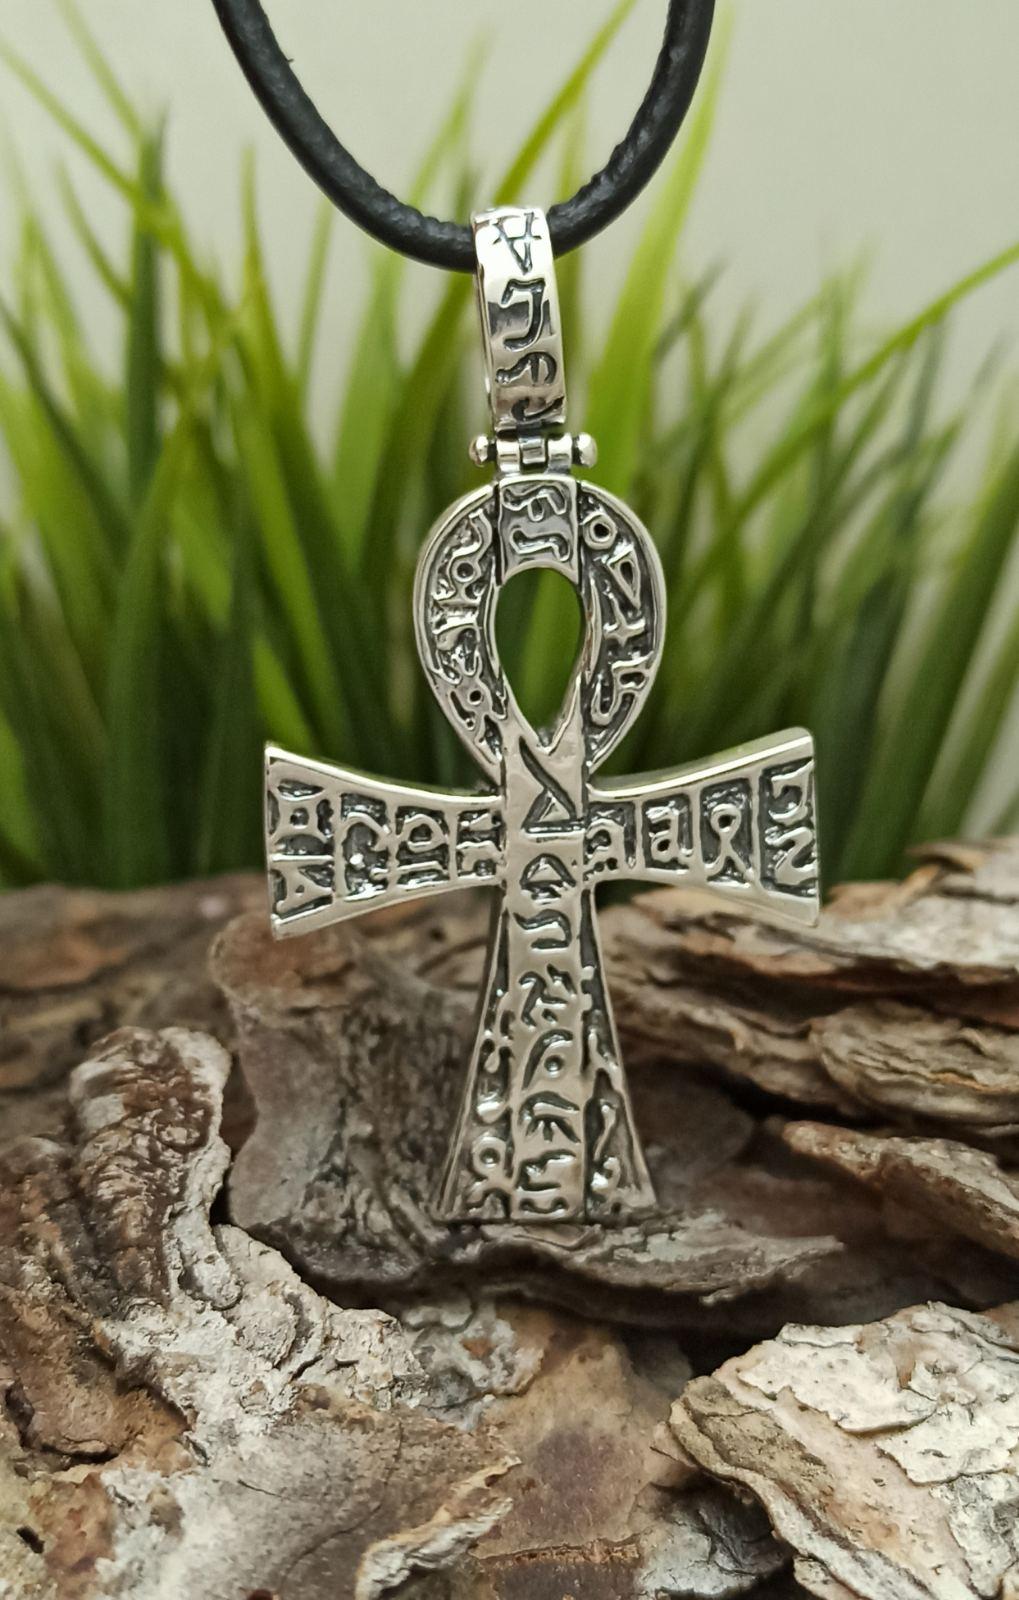 Египетски сребърен кръст "АНХ" - символ на живота! Сребърна висулка във формата на кръст с инкрустирани египетски символи.